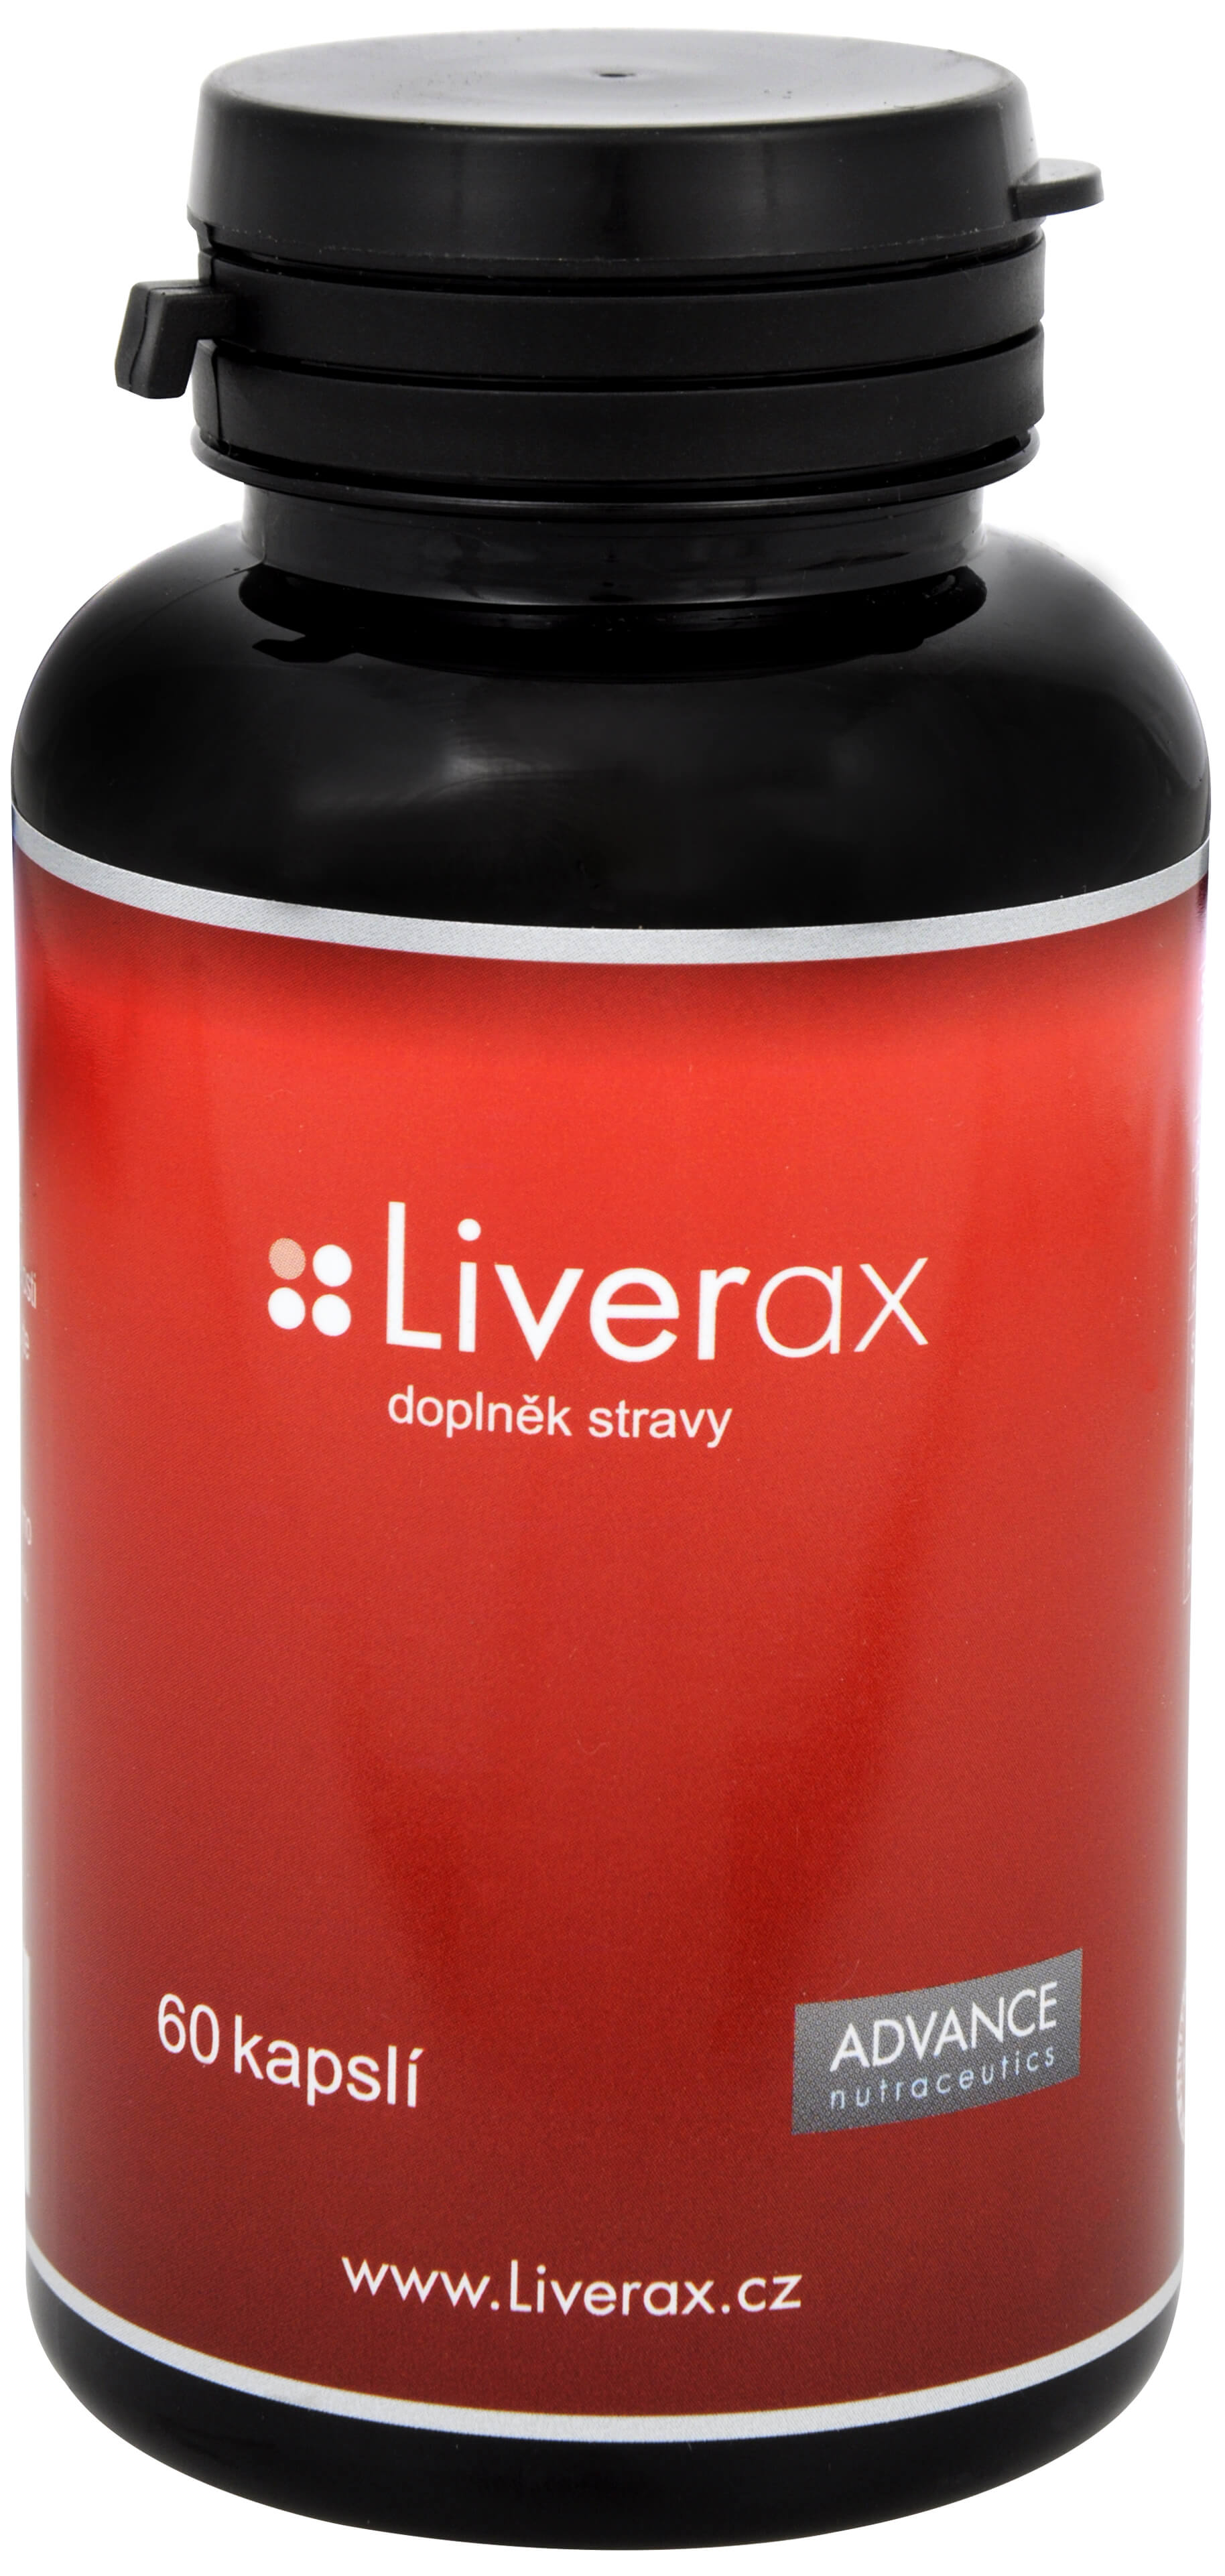 Zobrazit detail výrobku Advance nutraceutics Liverax 60 kapslí + 2 měsíce na vrácení zboží